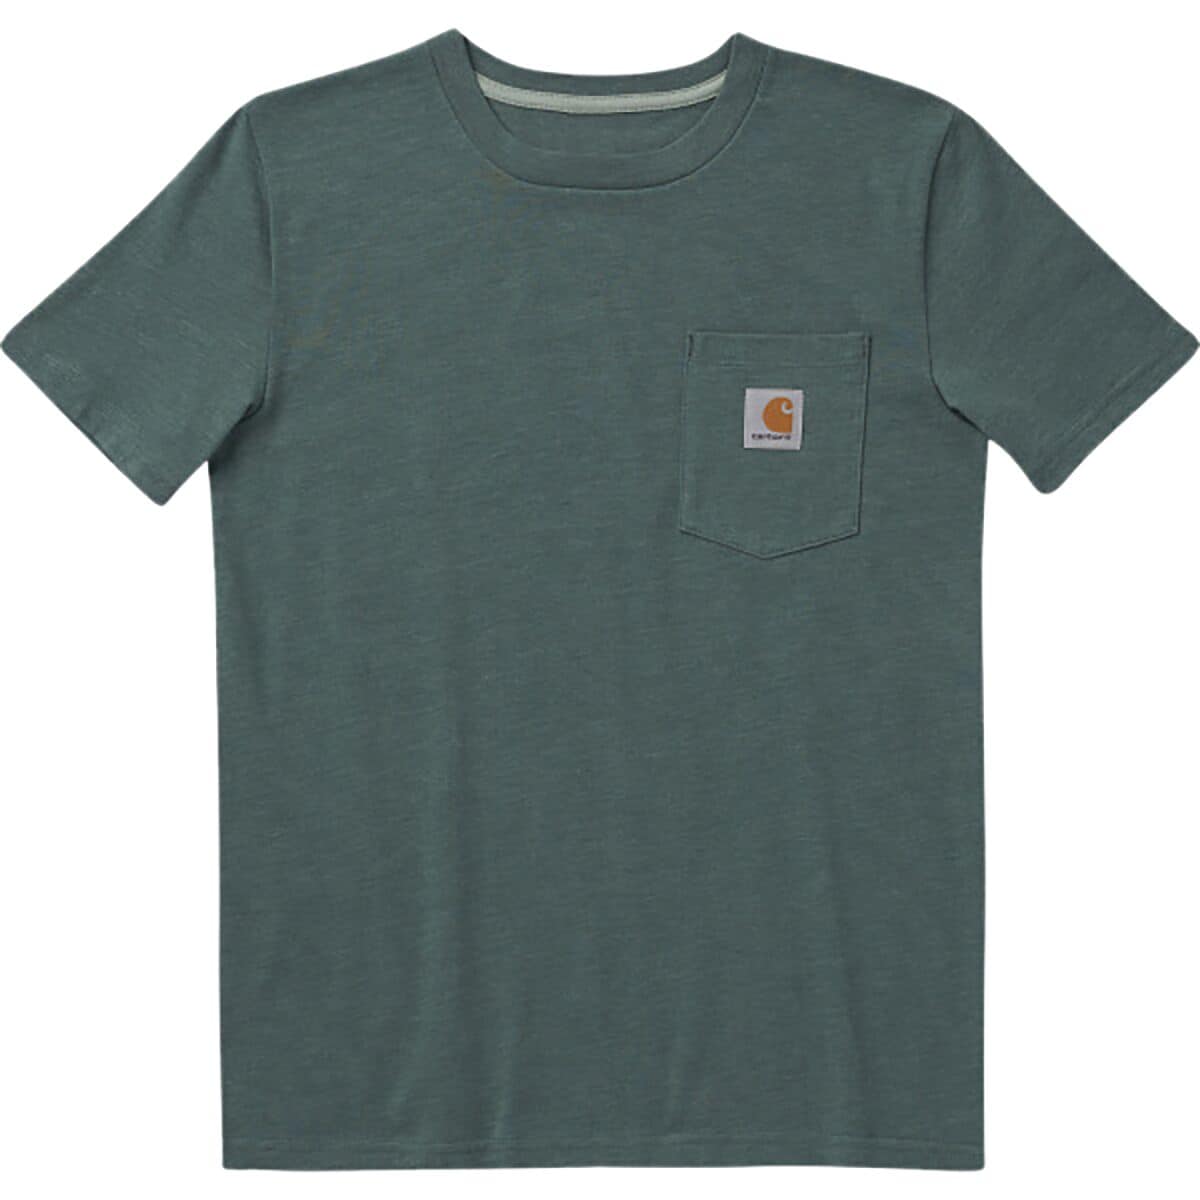 Carhartt Wilderness Short-Sleeve Graphic T-Shirt - Little Kids'